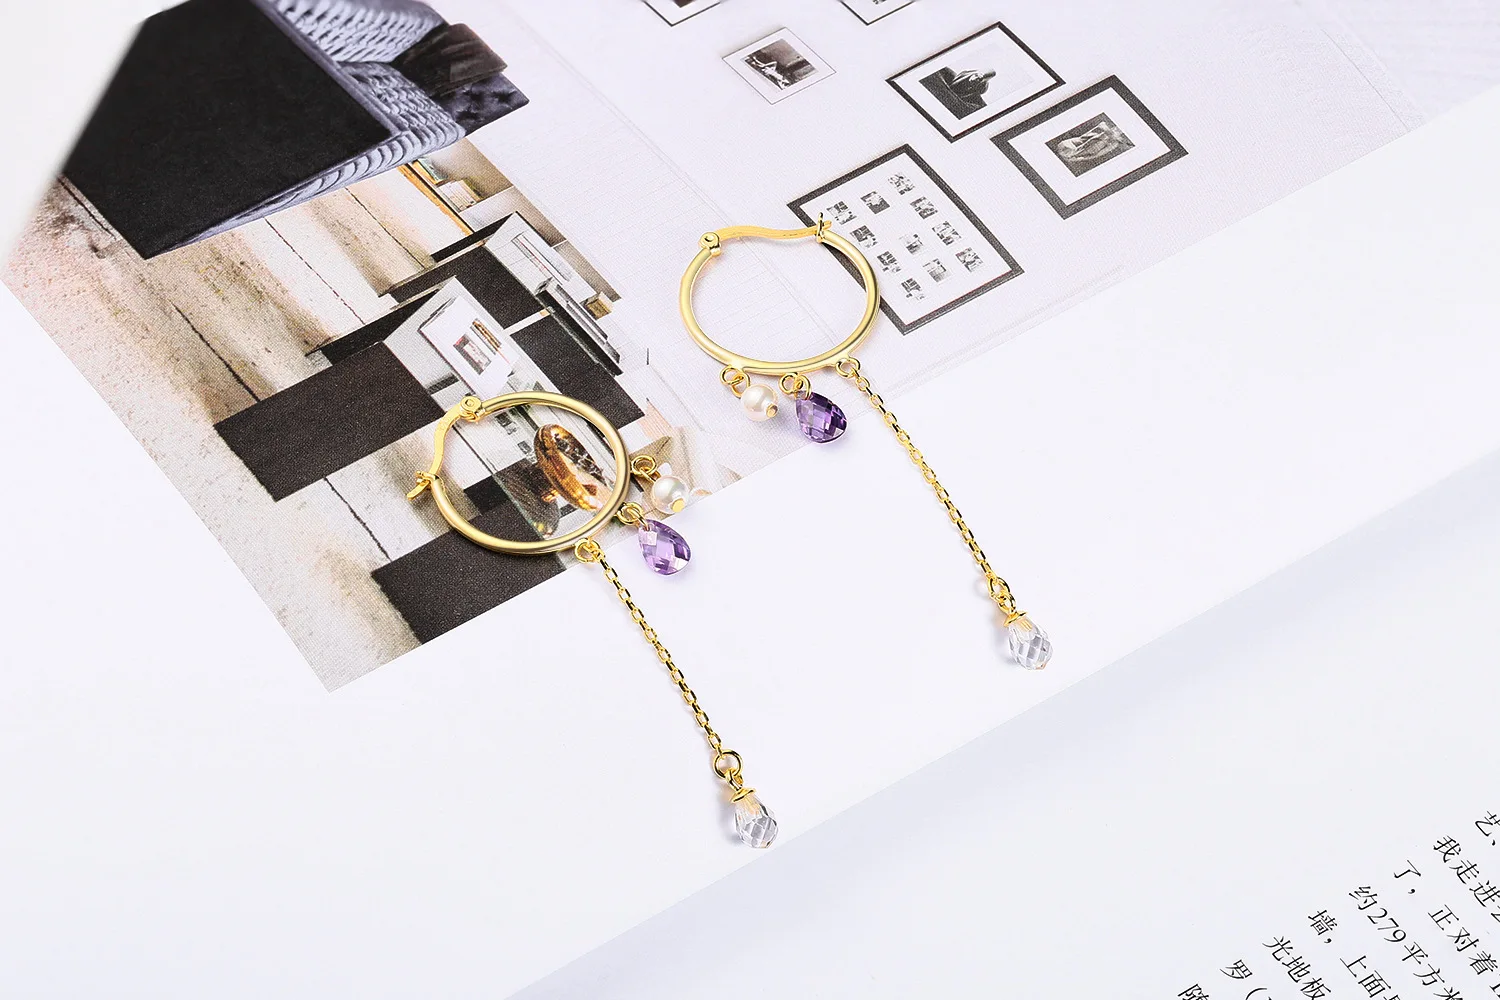 Роскошная Мода Корея S925 серебро золото жемчуг серьги с подвесками из циркона подарок подруге